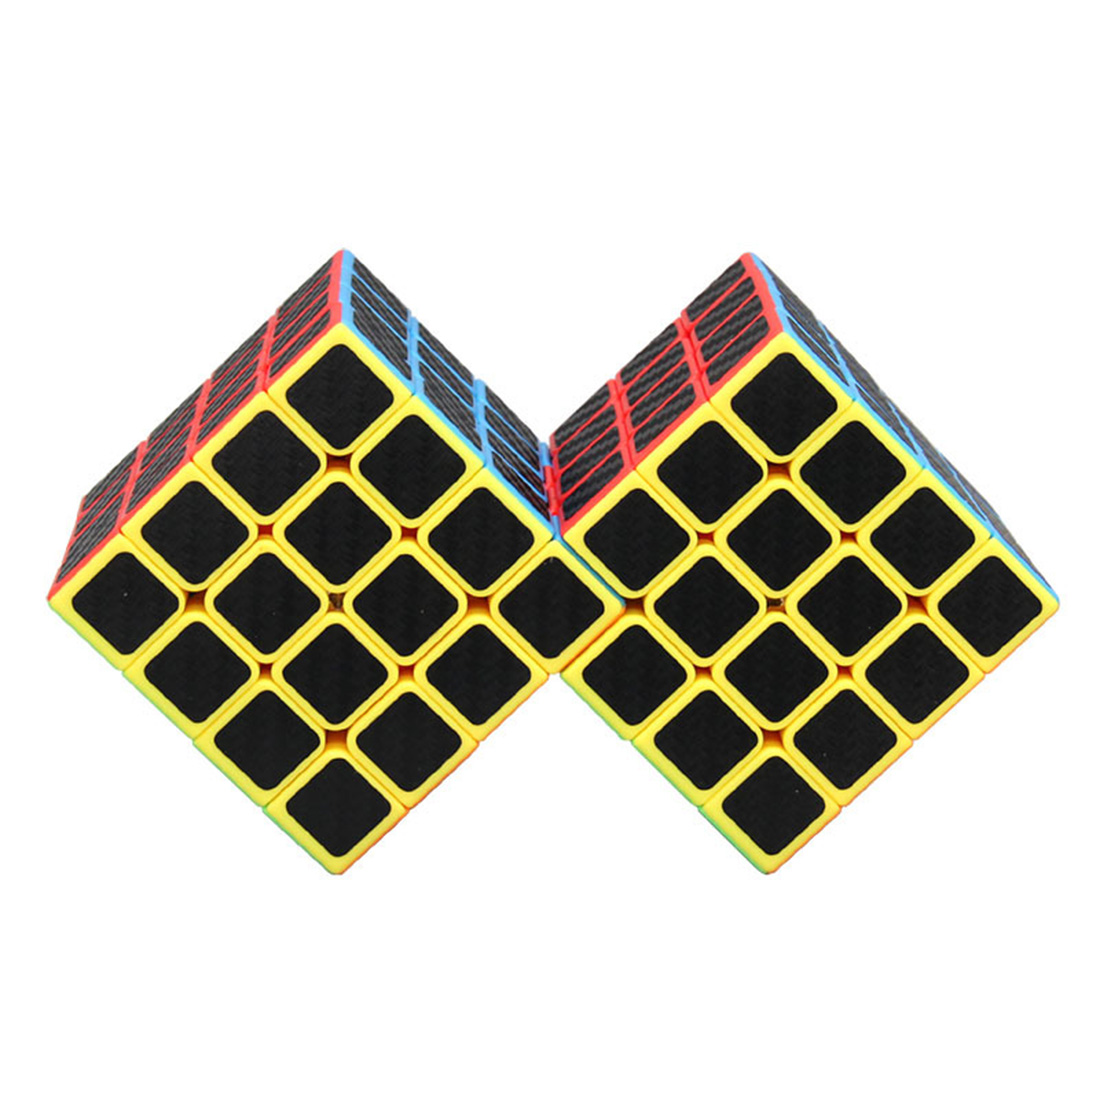 WitEden 4x4 Double Carbon Fiber Magic Cube (Colorful)